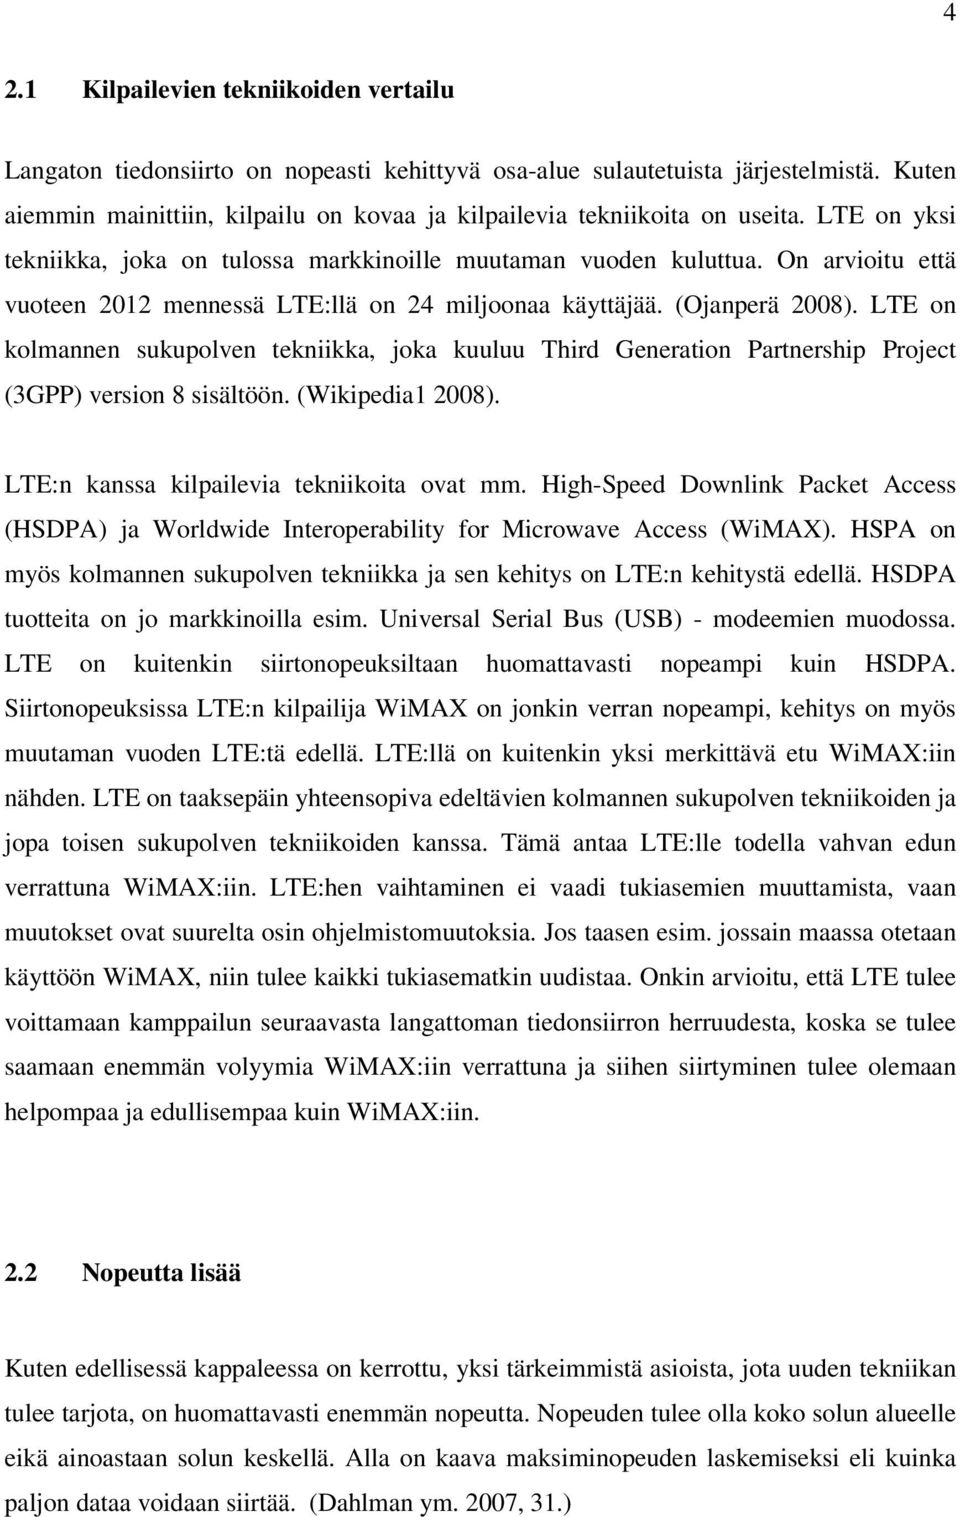 On arvioitu että vuoteen 2012 mennessä LTE:llä on 24 miljoonaa käyttäjää. (Ojanperä 2008).